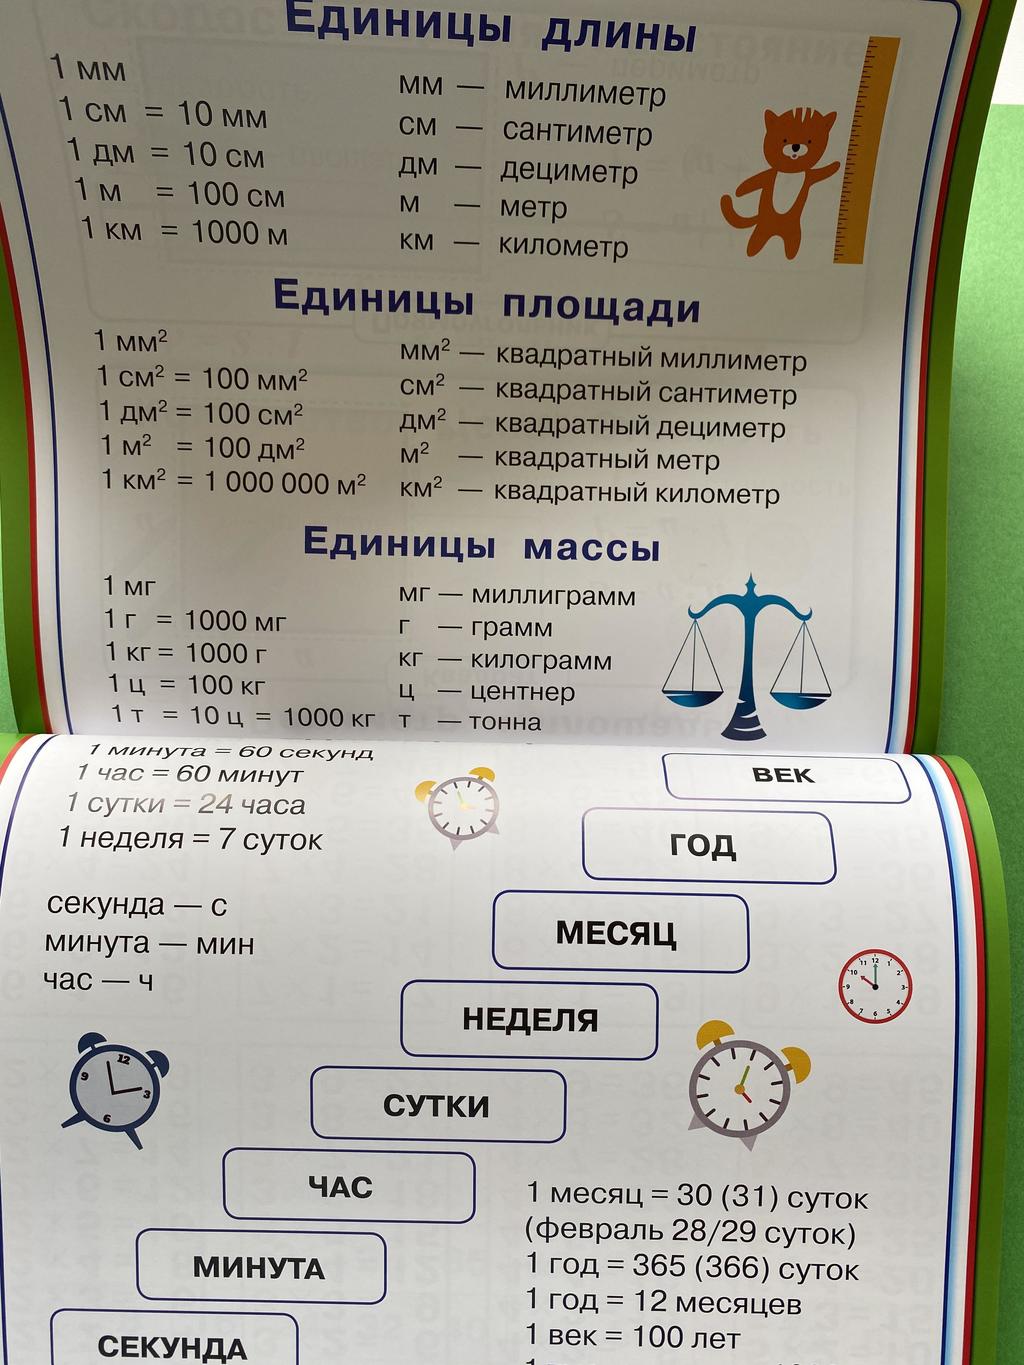 Все плакаты для начальной школы. Русский язык. Математика